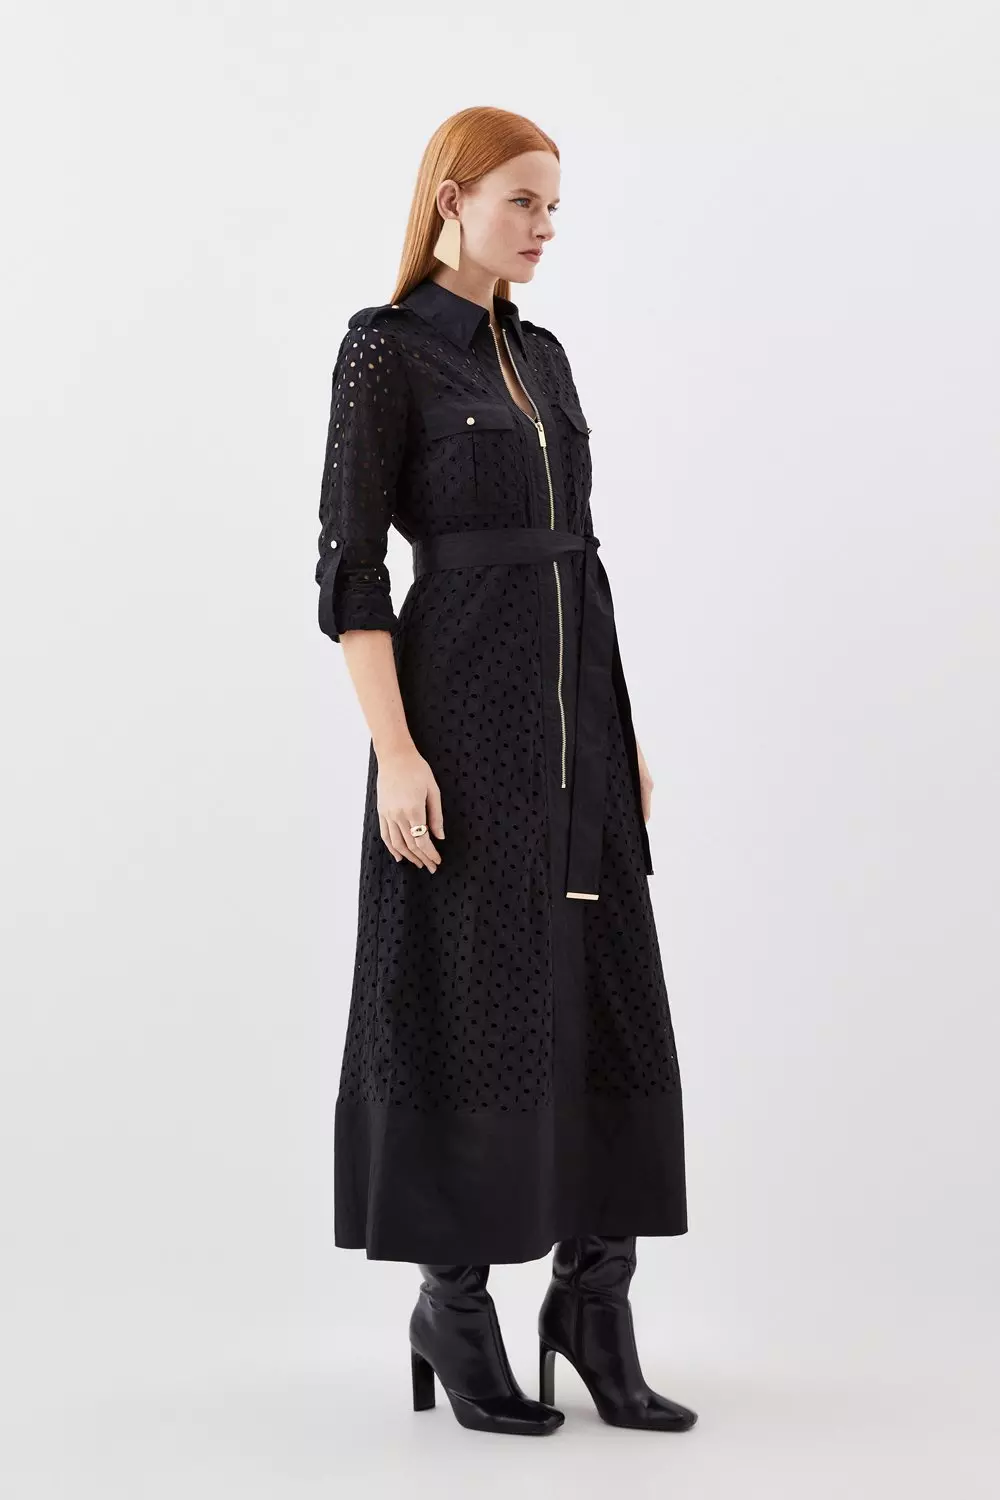 Embroidered Pure Cotton Midi Dress in Black : TXR262